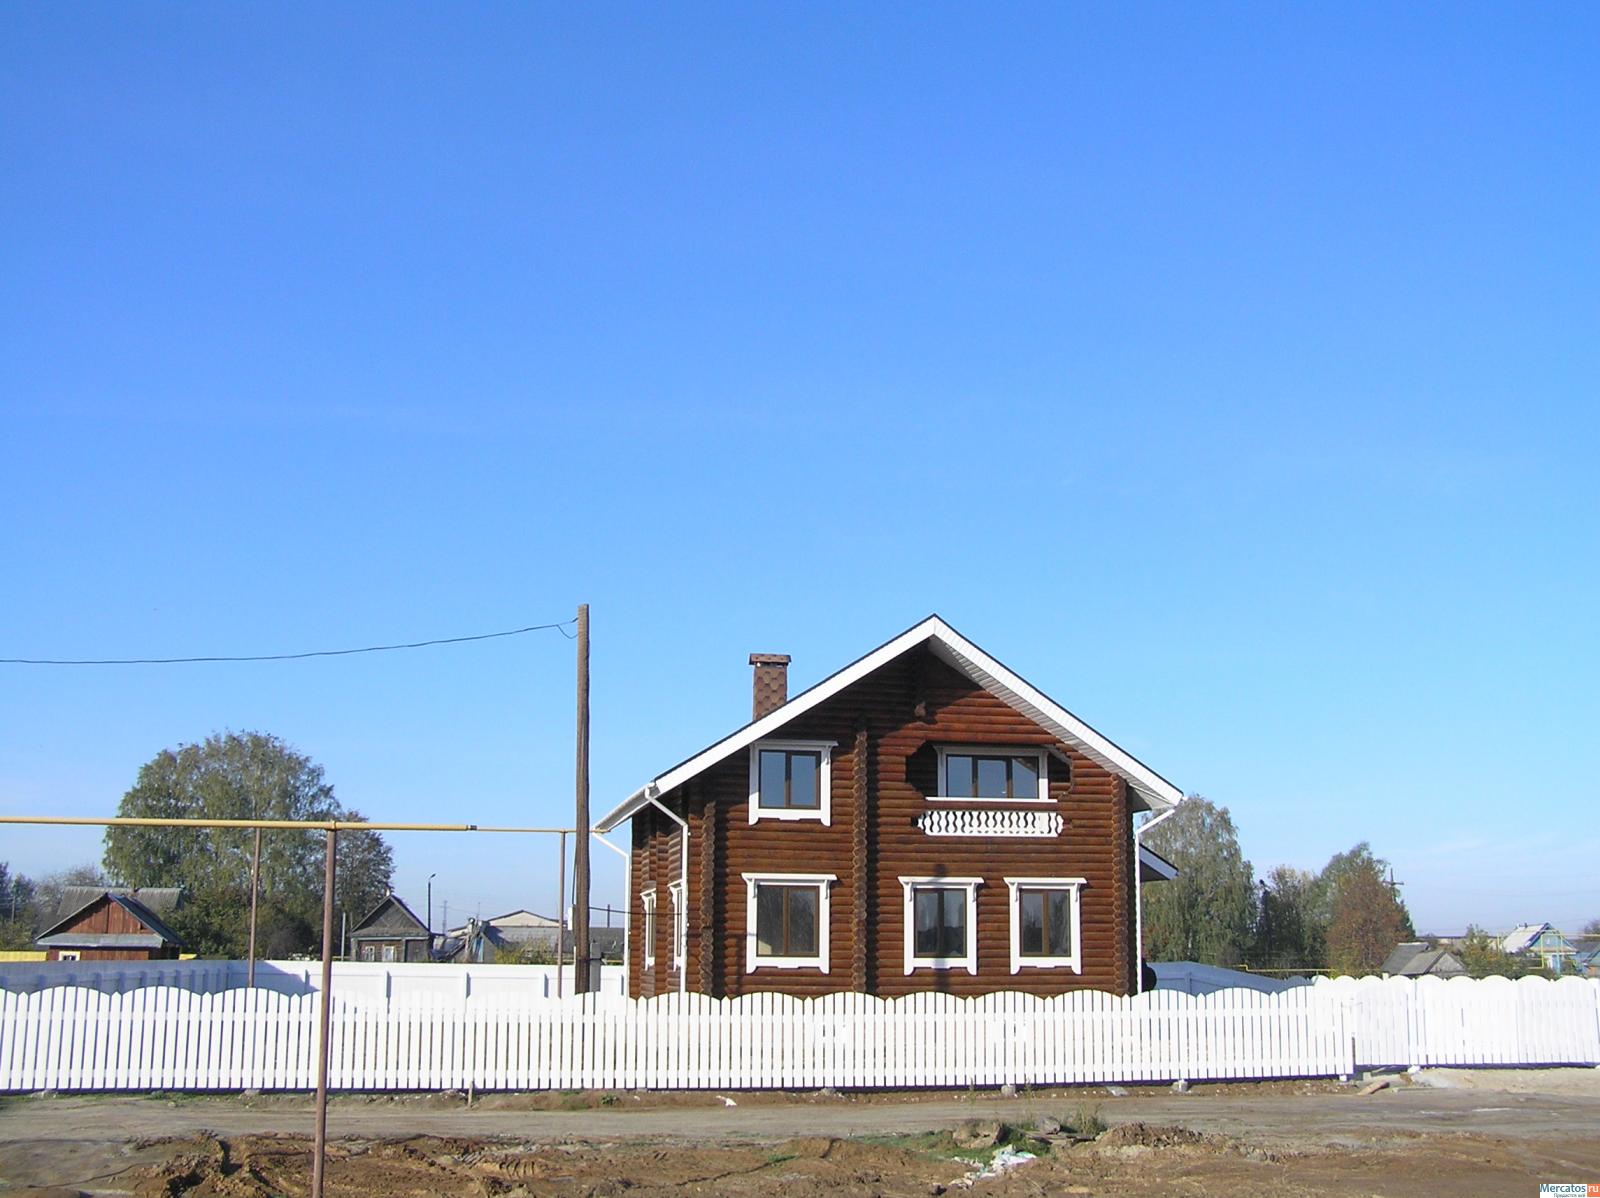 Продажа домов в городецком районе нижегородской области с фото на авито недорого без посредников